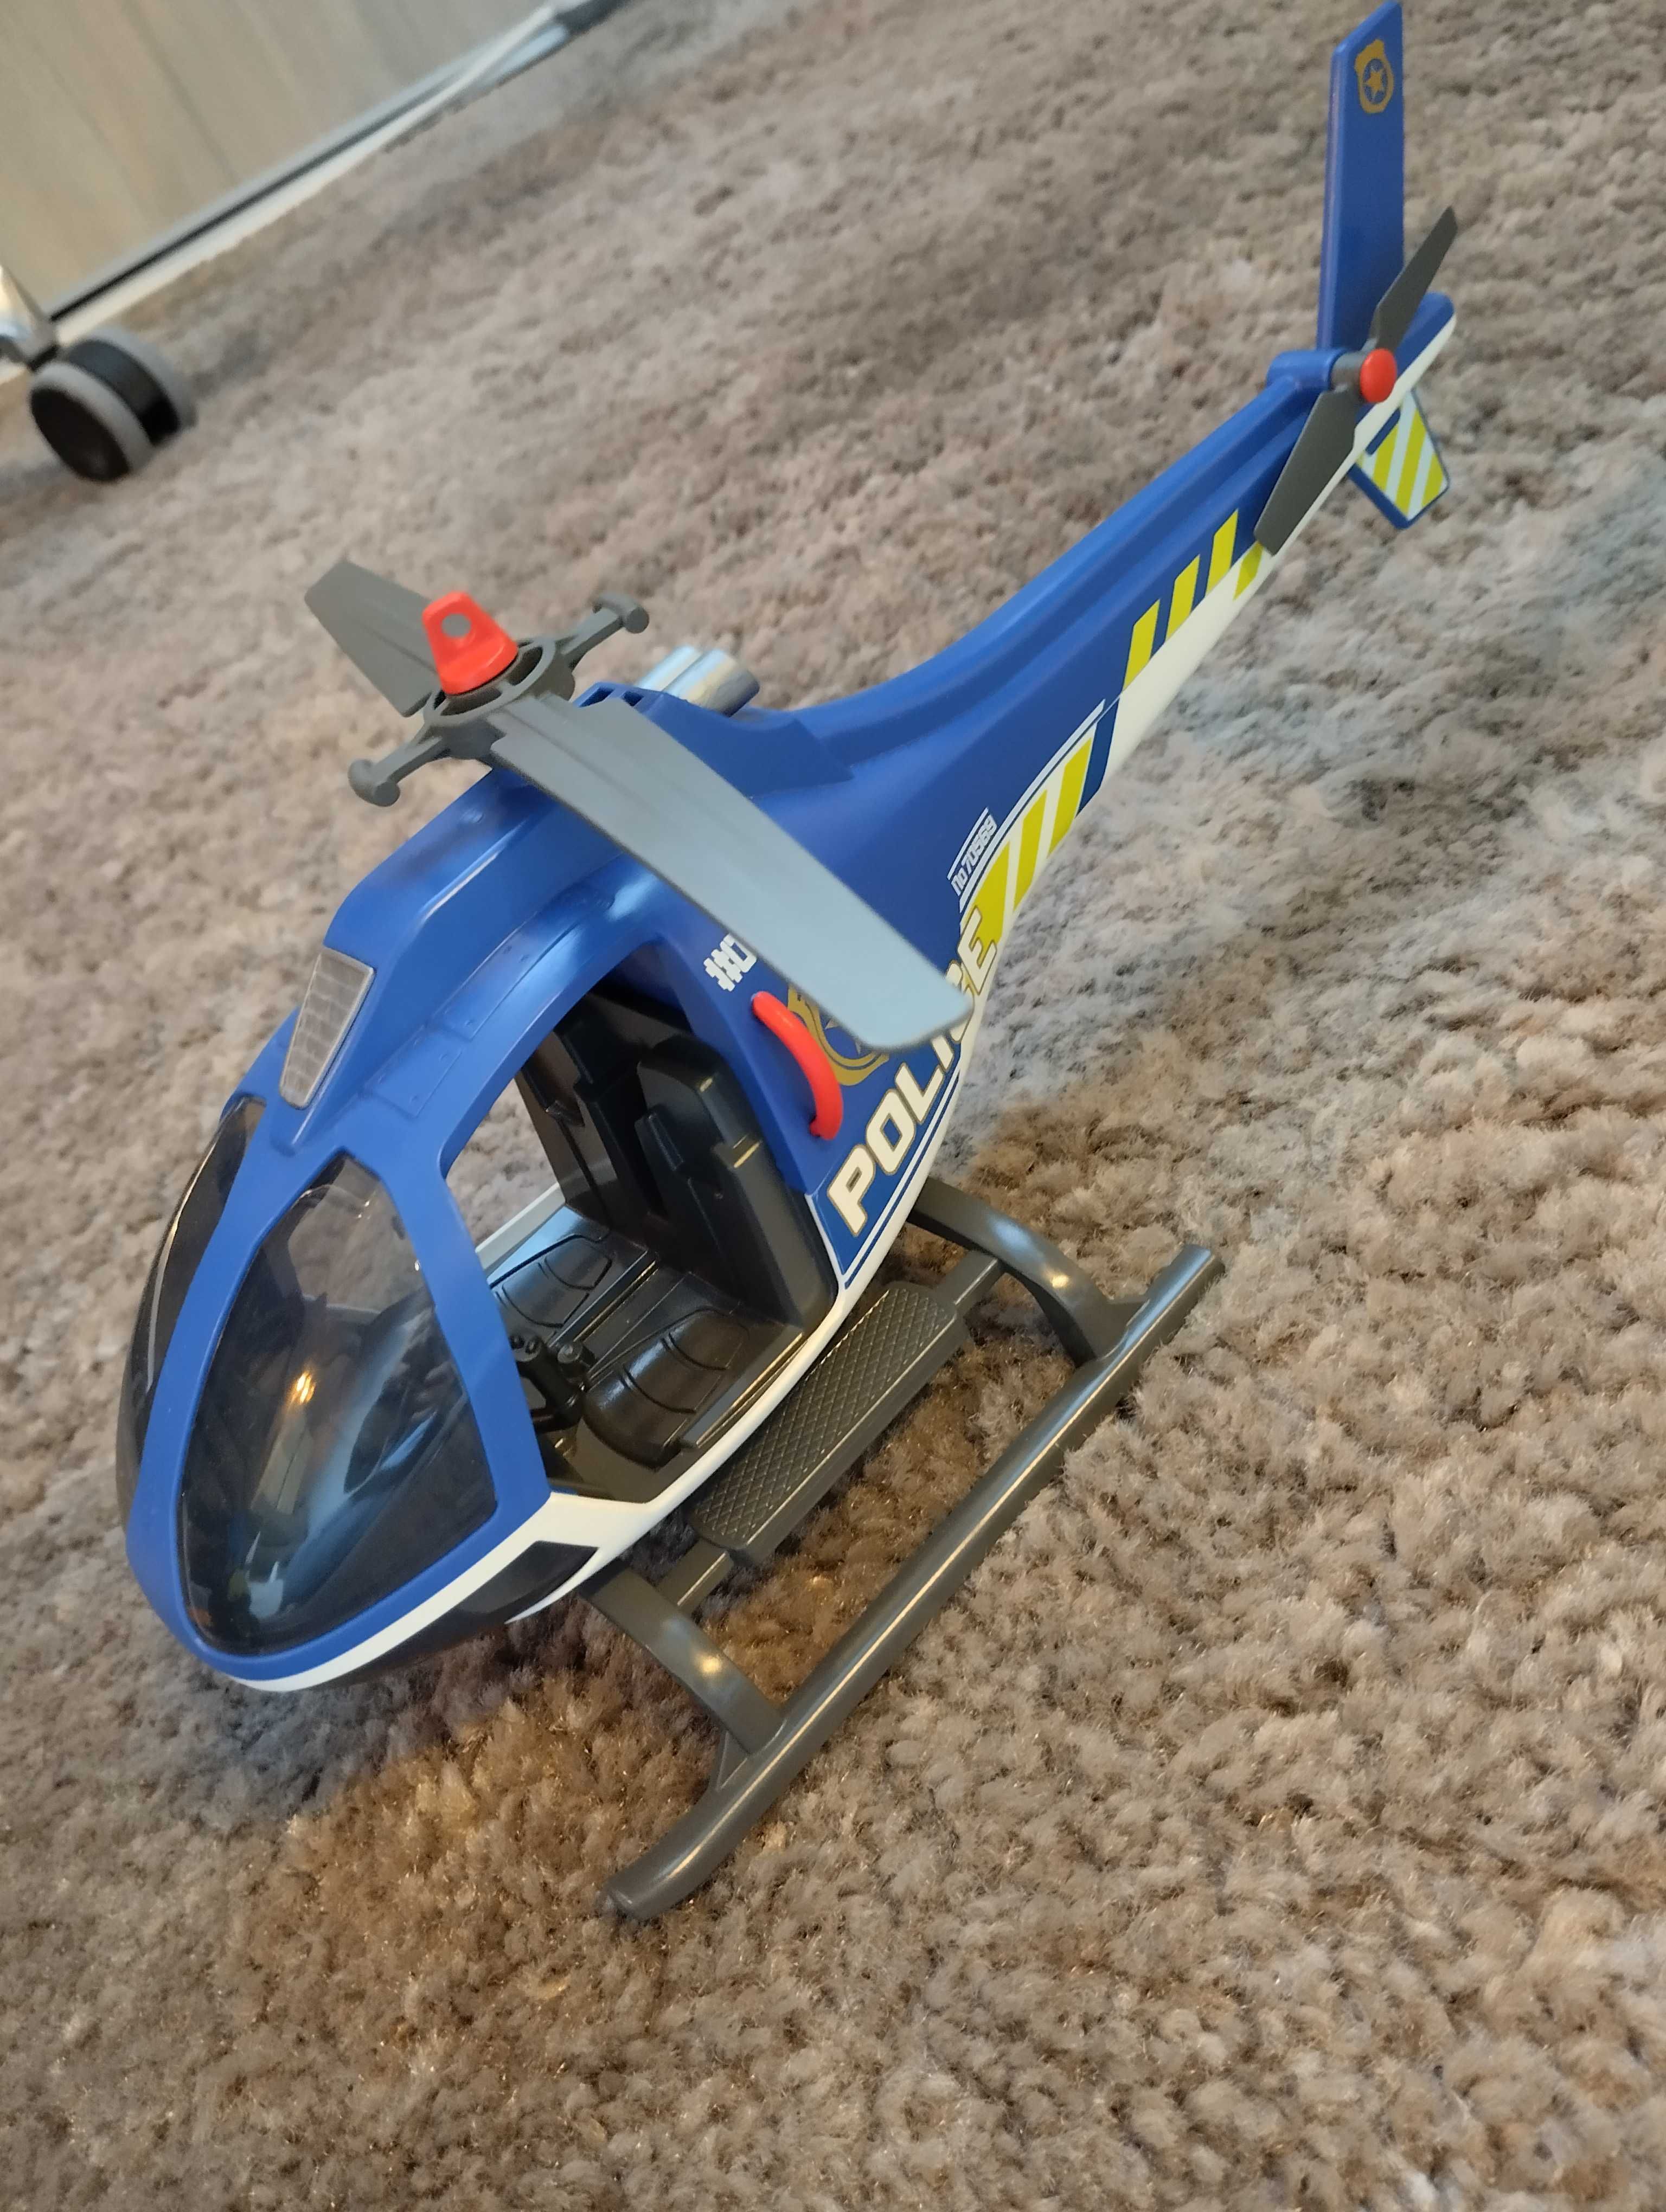 Dzień dziecka, Trójkołowiec Playmobile wielofunkcyjny z helikopterem